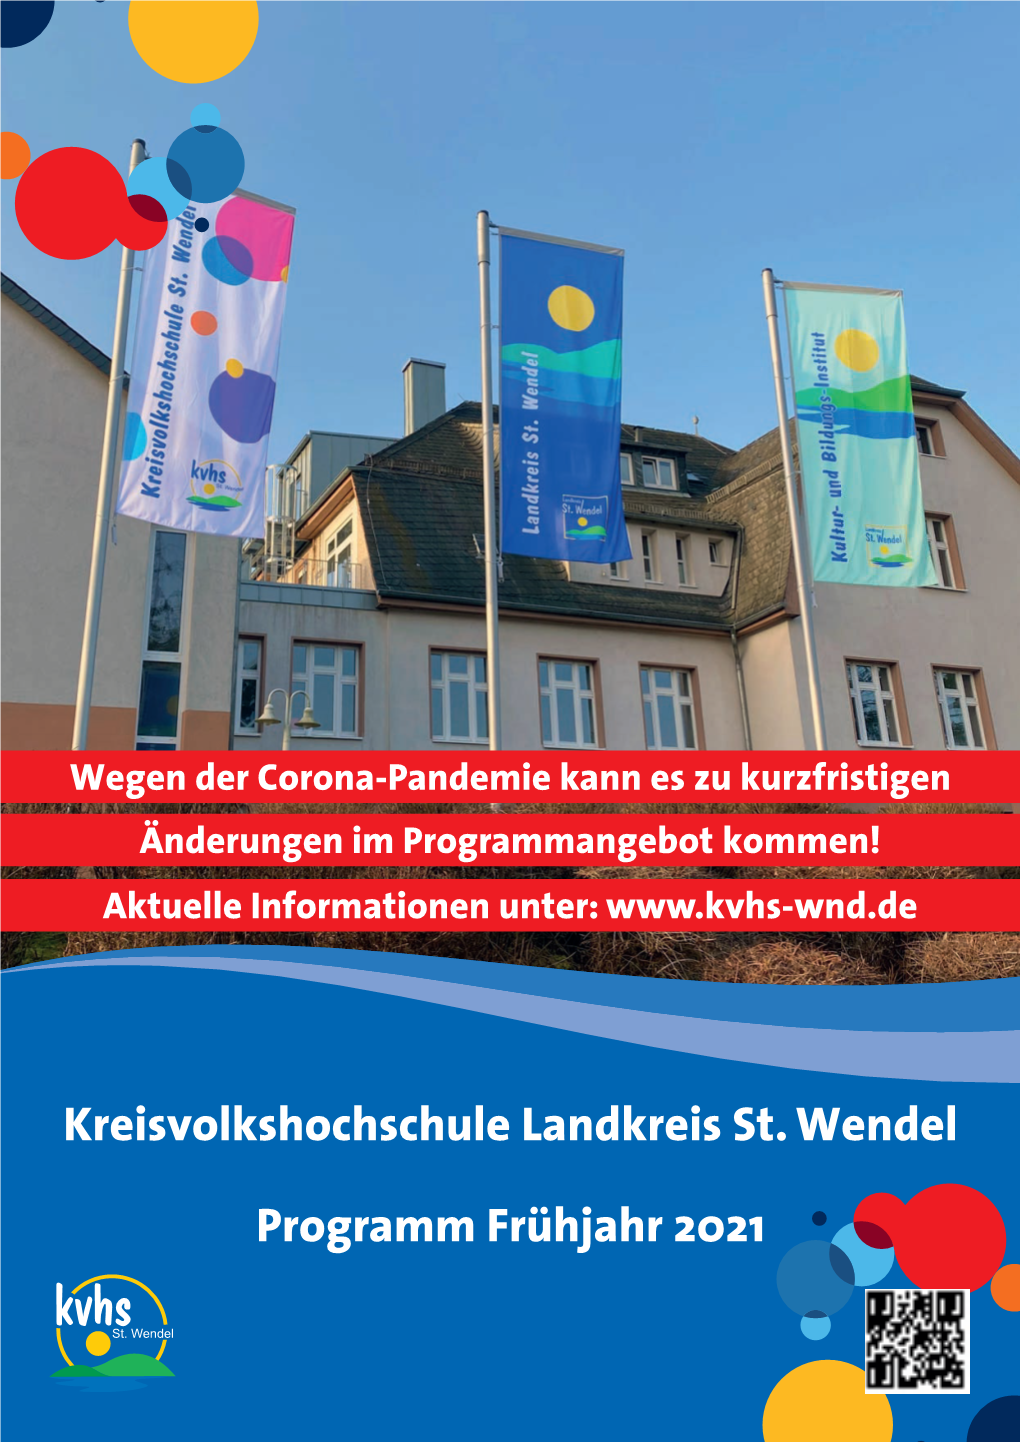 Kreisvolkshochschule Landkreis St. Wendel Programm Frühjahr 2021